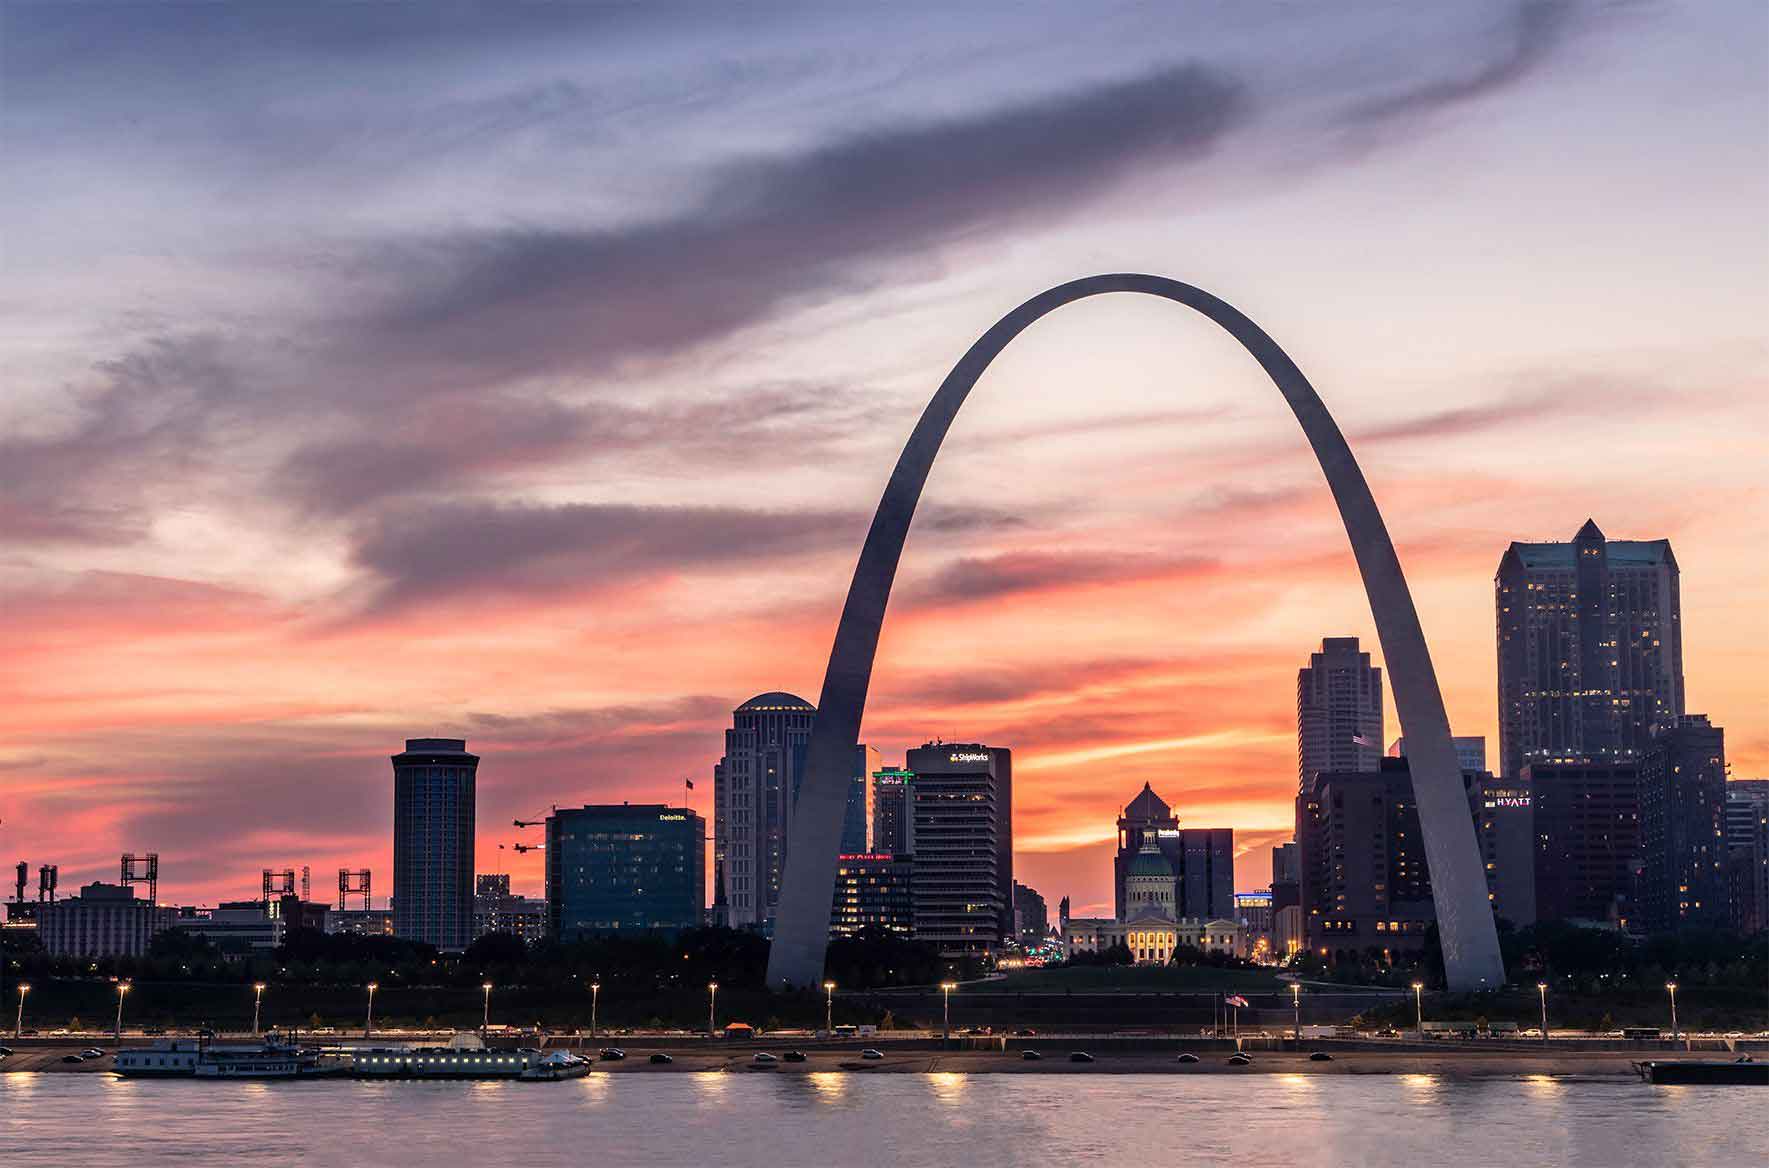 St. Louis sunset photo